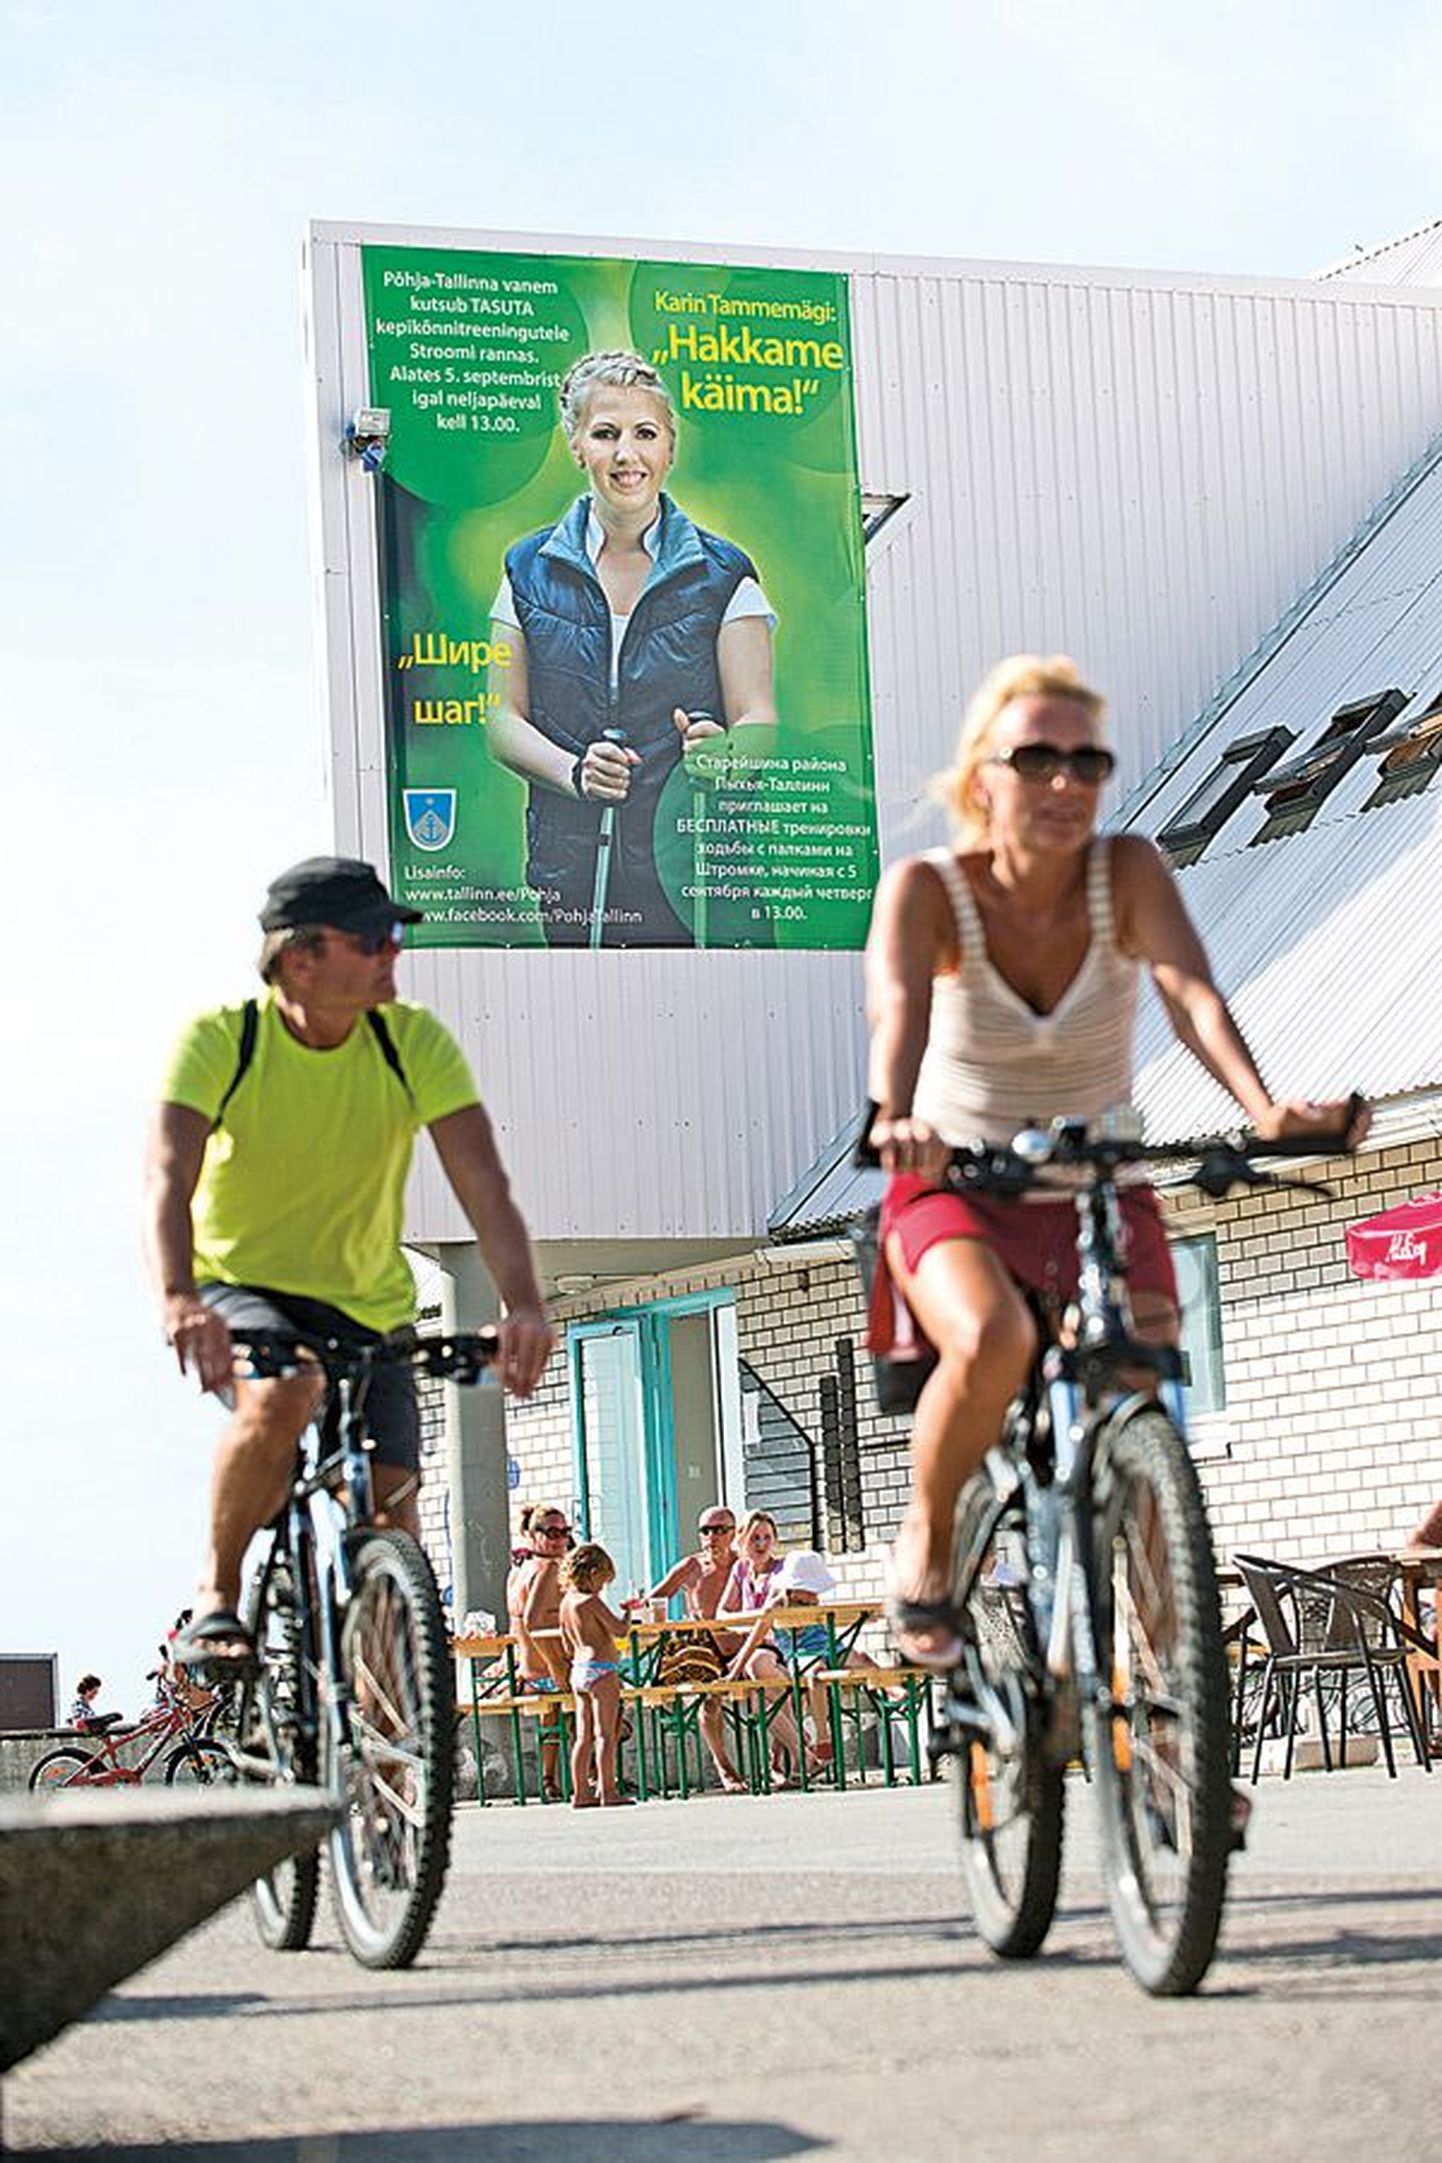 Реклама скандинавской ходьбы на пляже Штромка от старейшины части города Пыхья-Таллинн, центристки Карин Таммемяги.